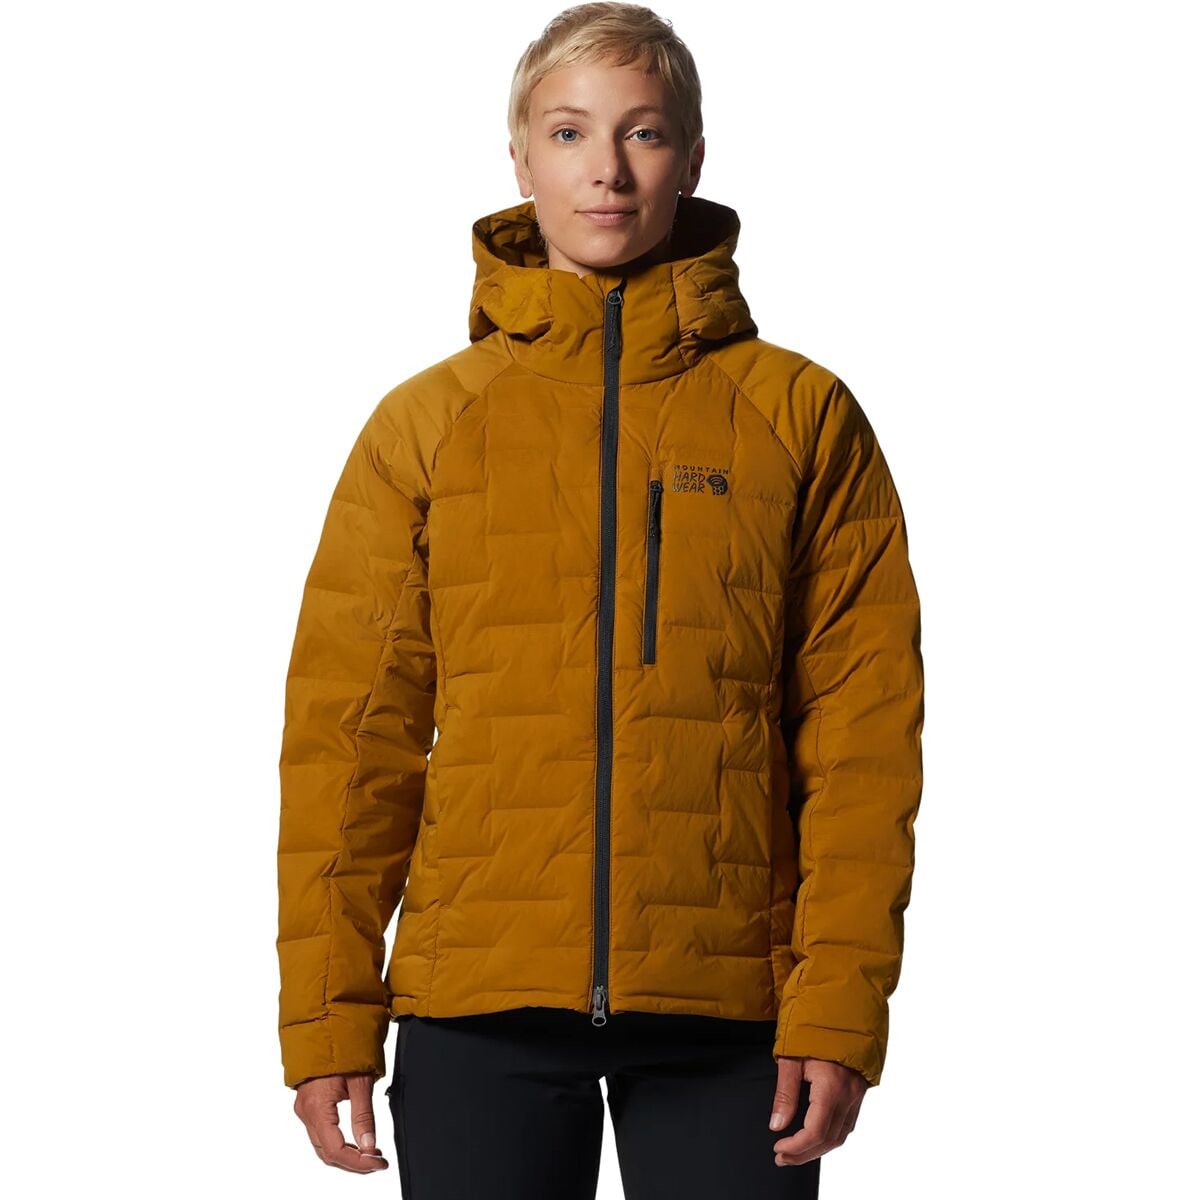  Mountain Hardwear Stretchdown Hooded Jacket - Women's